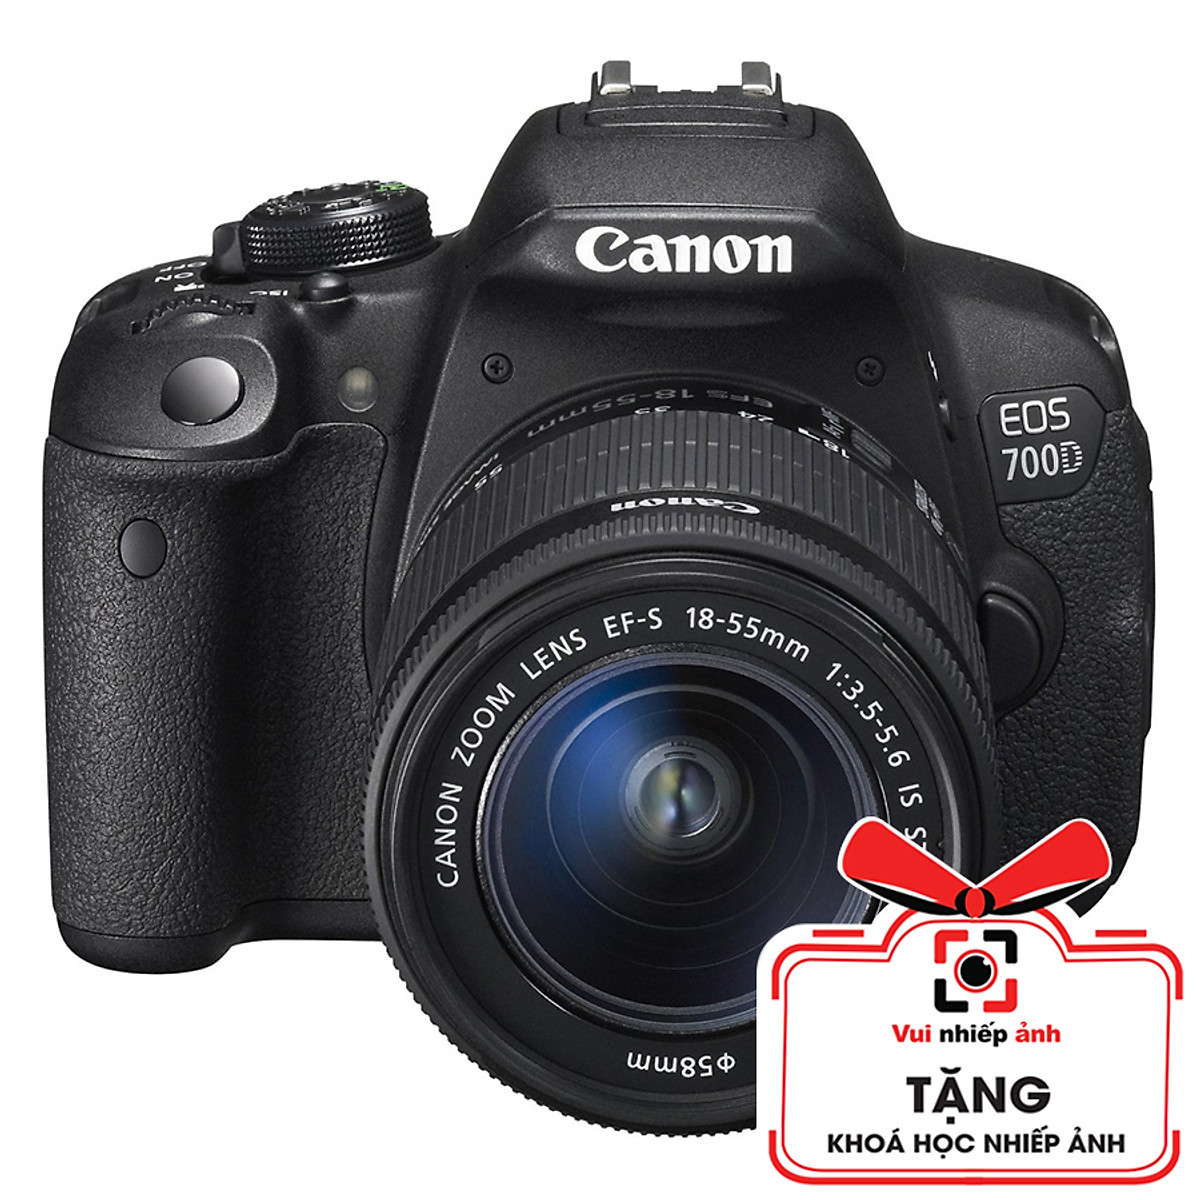 Canon 700D + Lens 18-55 giá khuyến mãi hấp dẫn